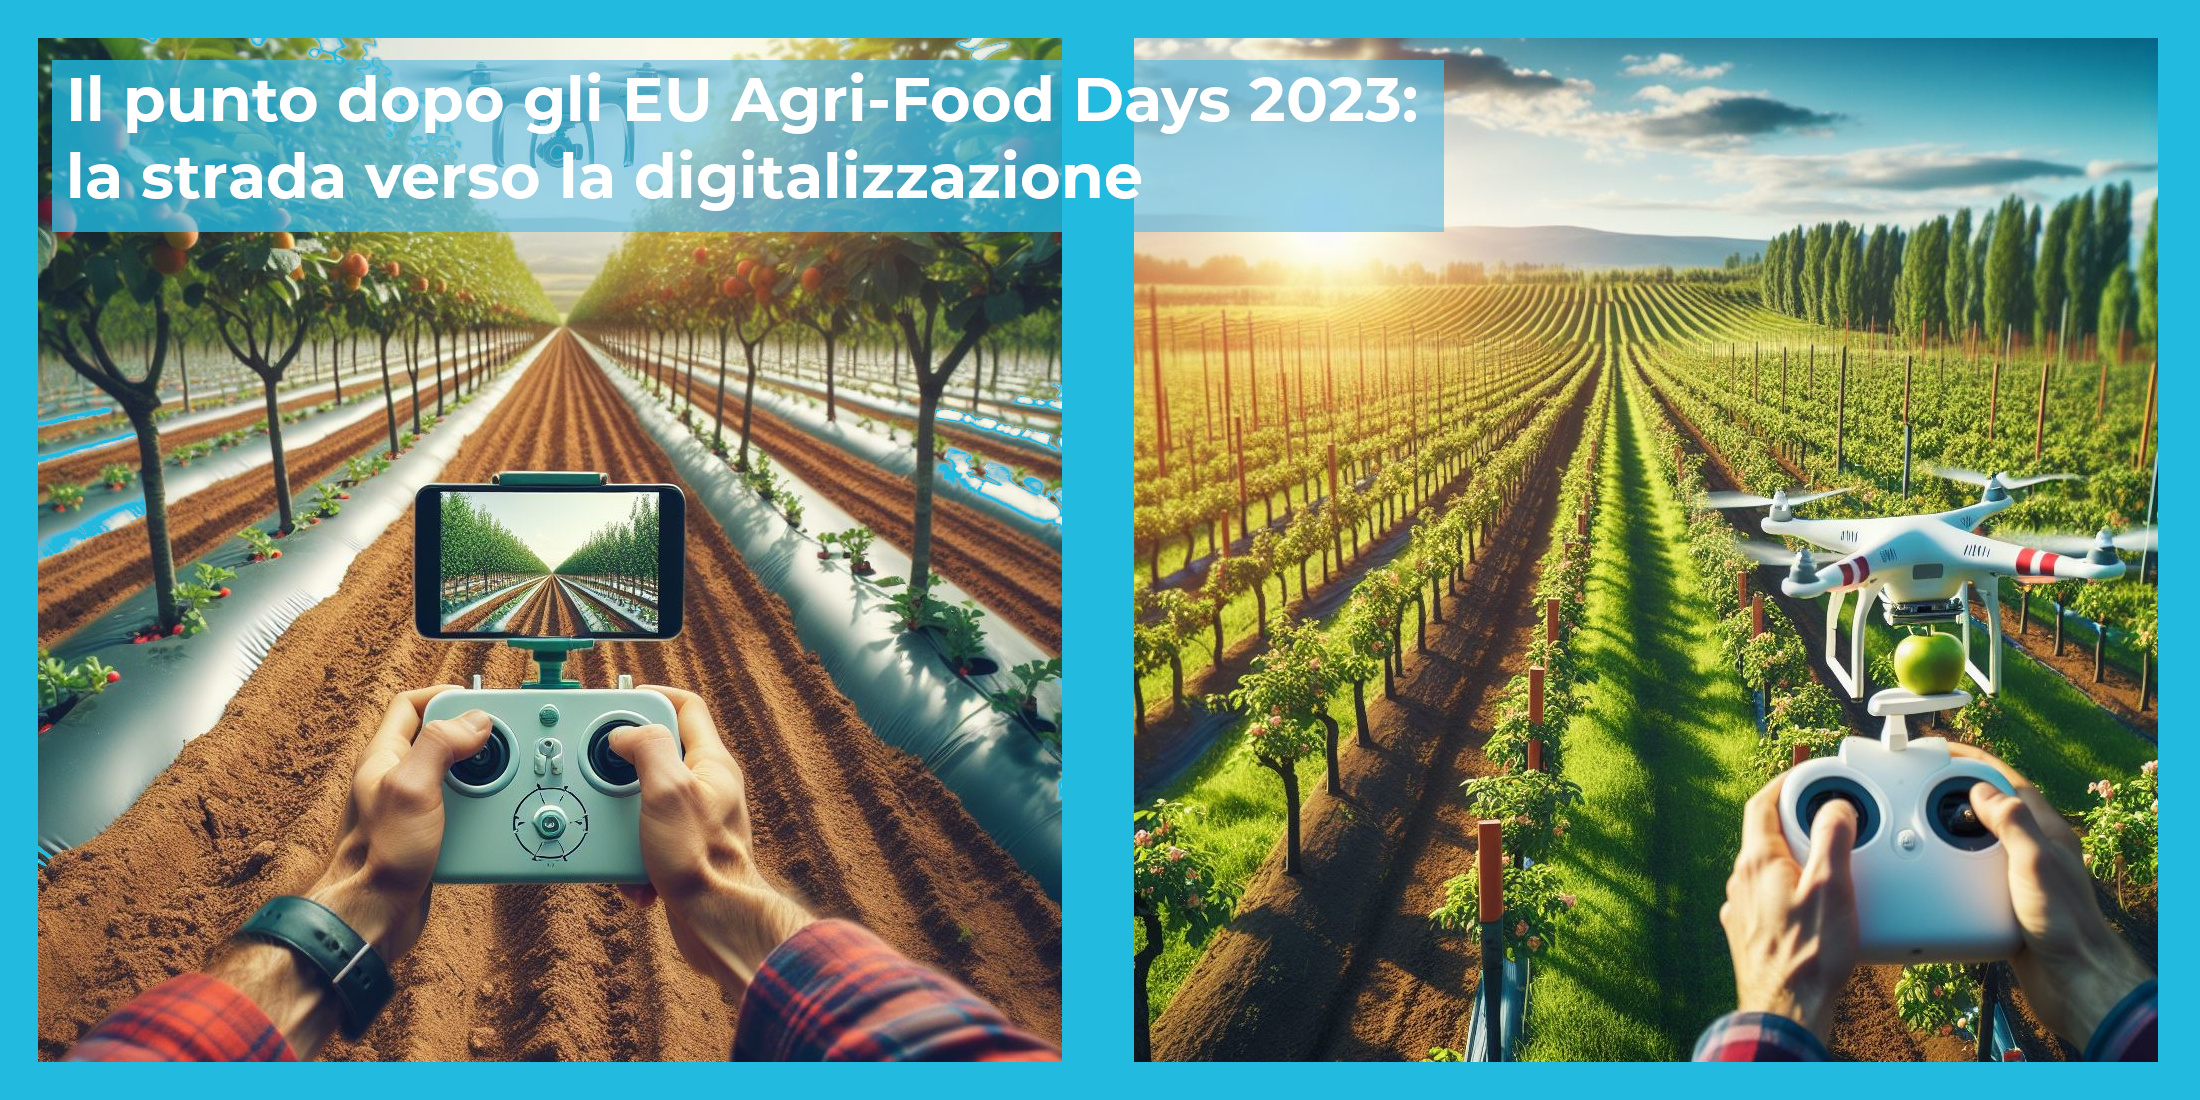 Il punto dopo gli EU Agri-Food Days 2023: la strada verso la digitalizzazione